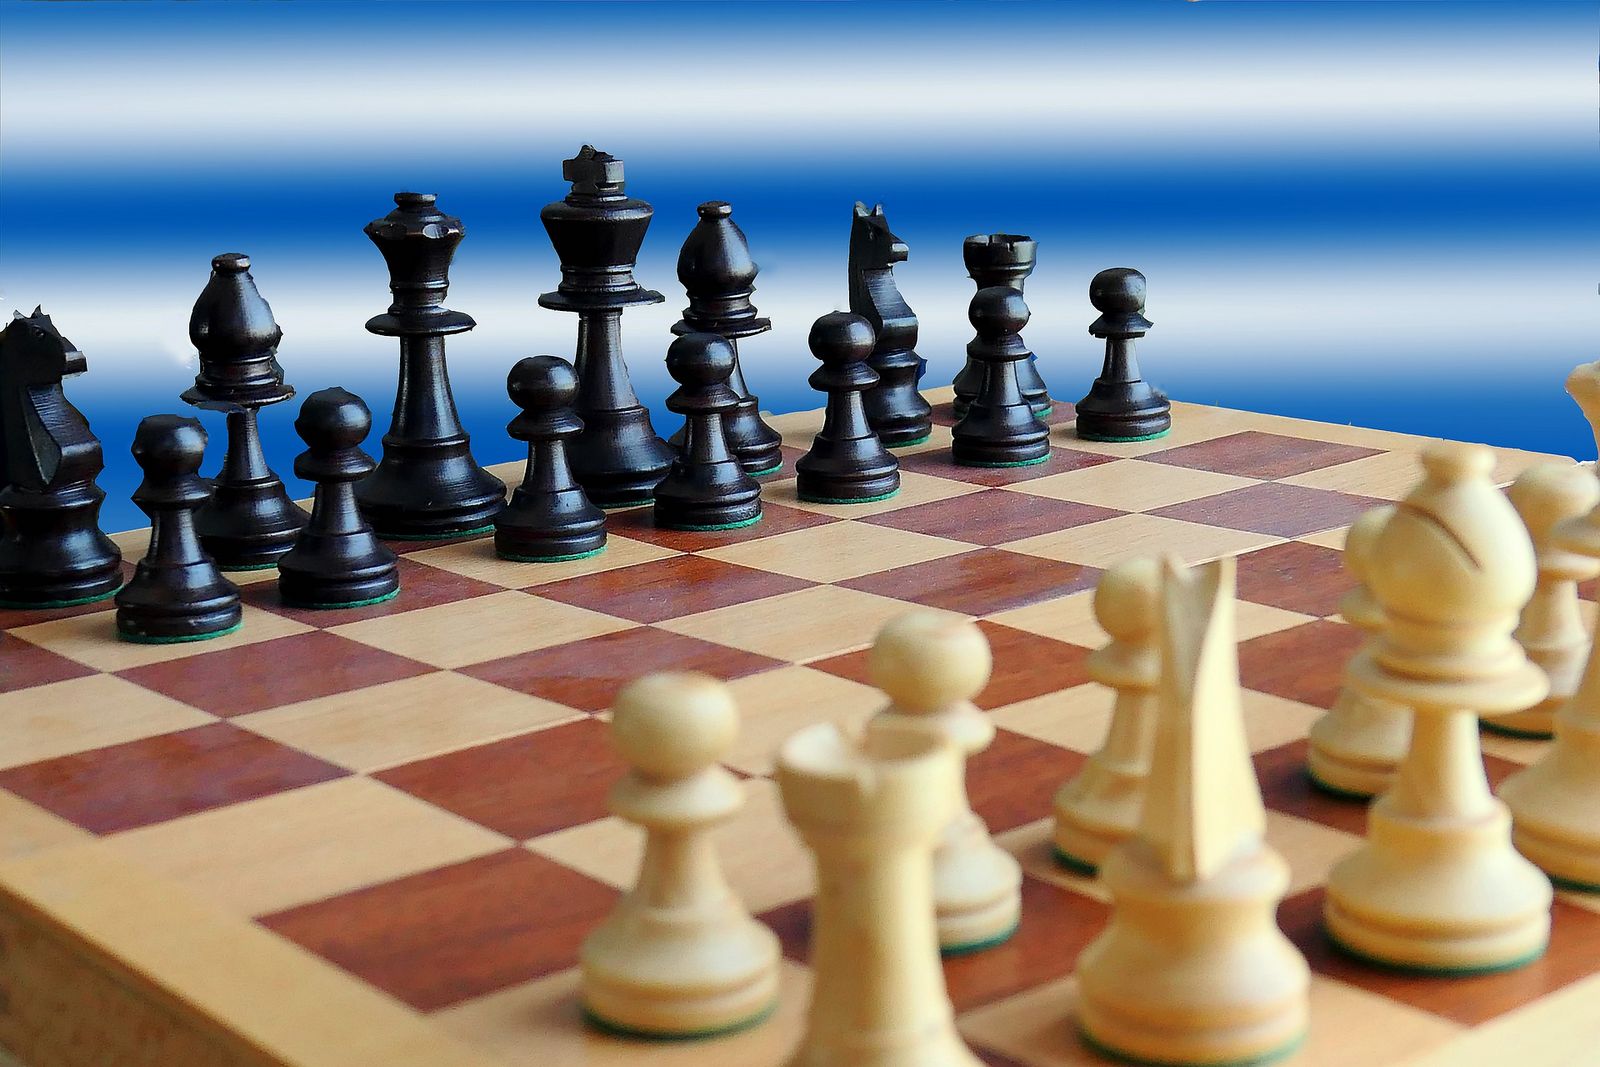 Šachy patří mezi nejznámější deskové hry